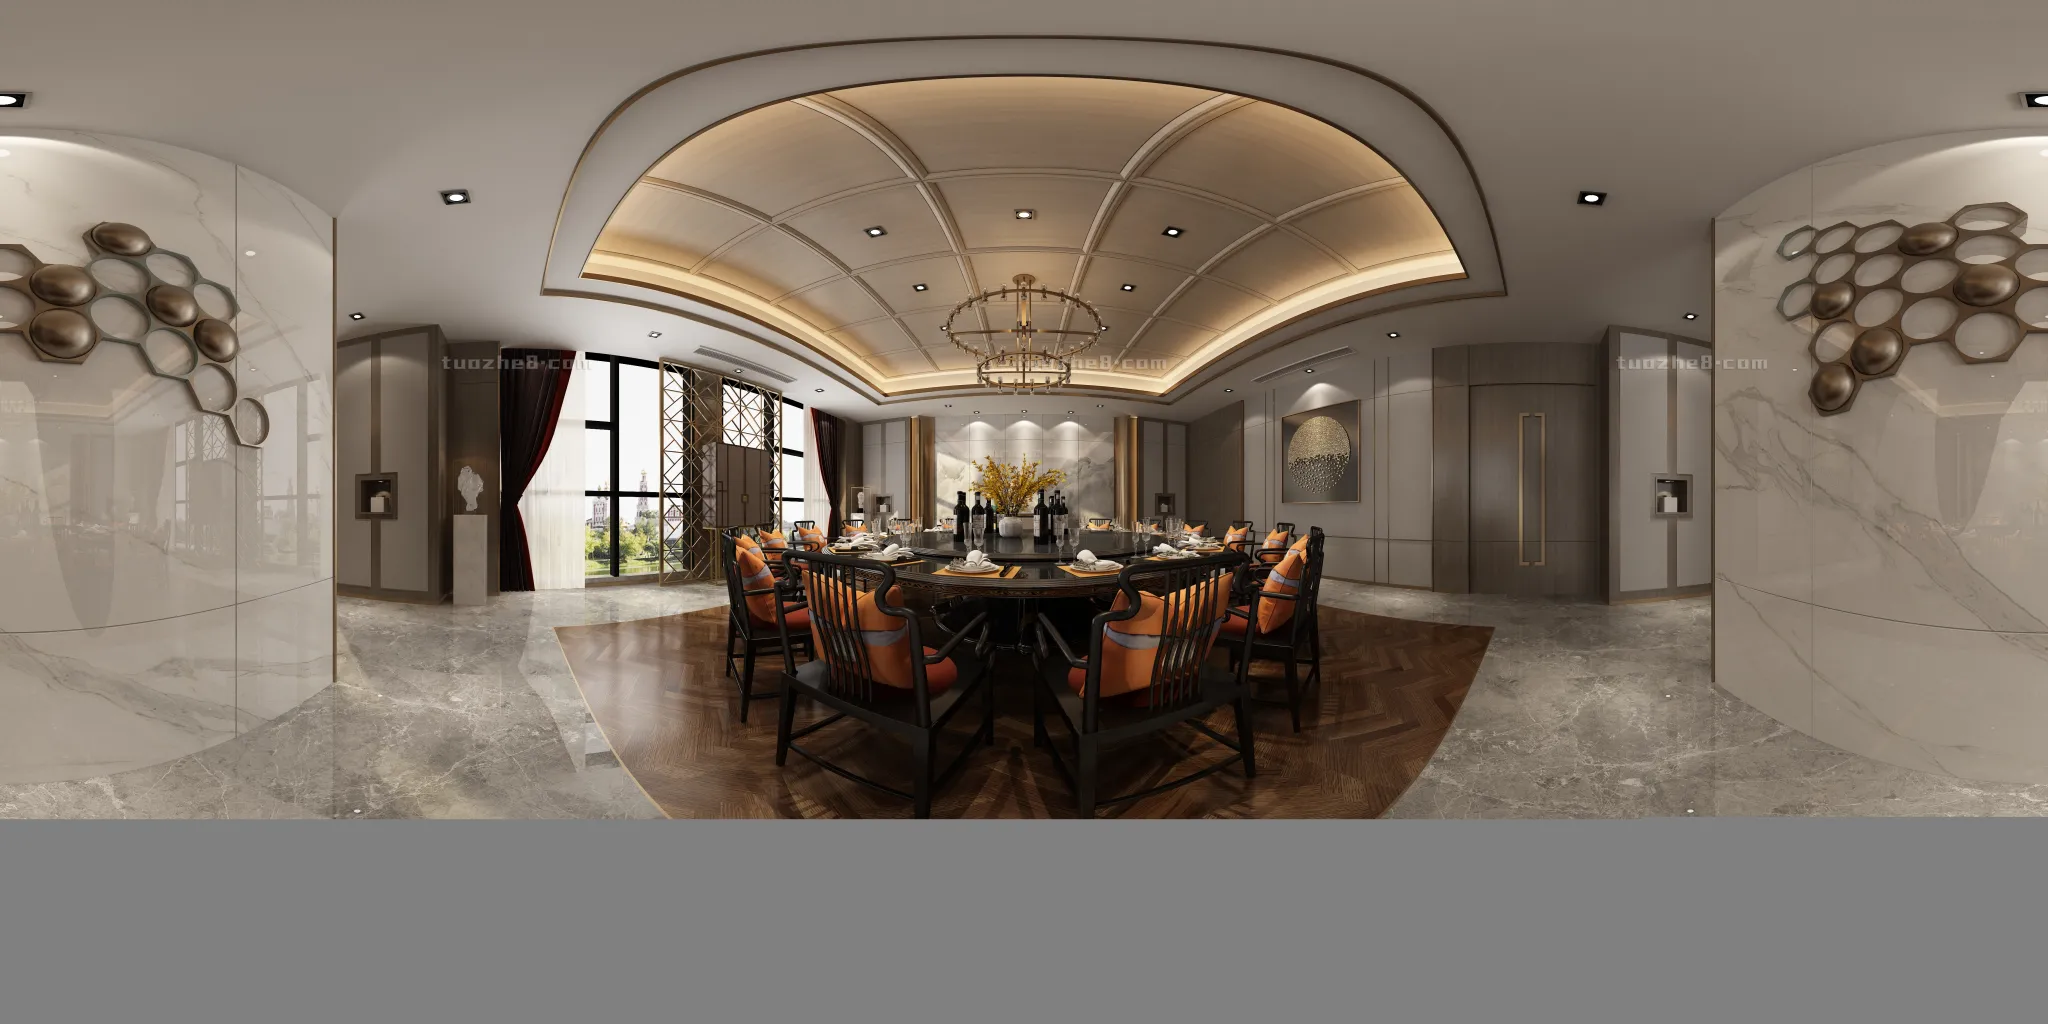 Extension Interior – RESTAURANT DINING – 035